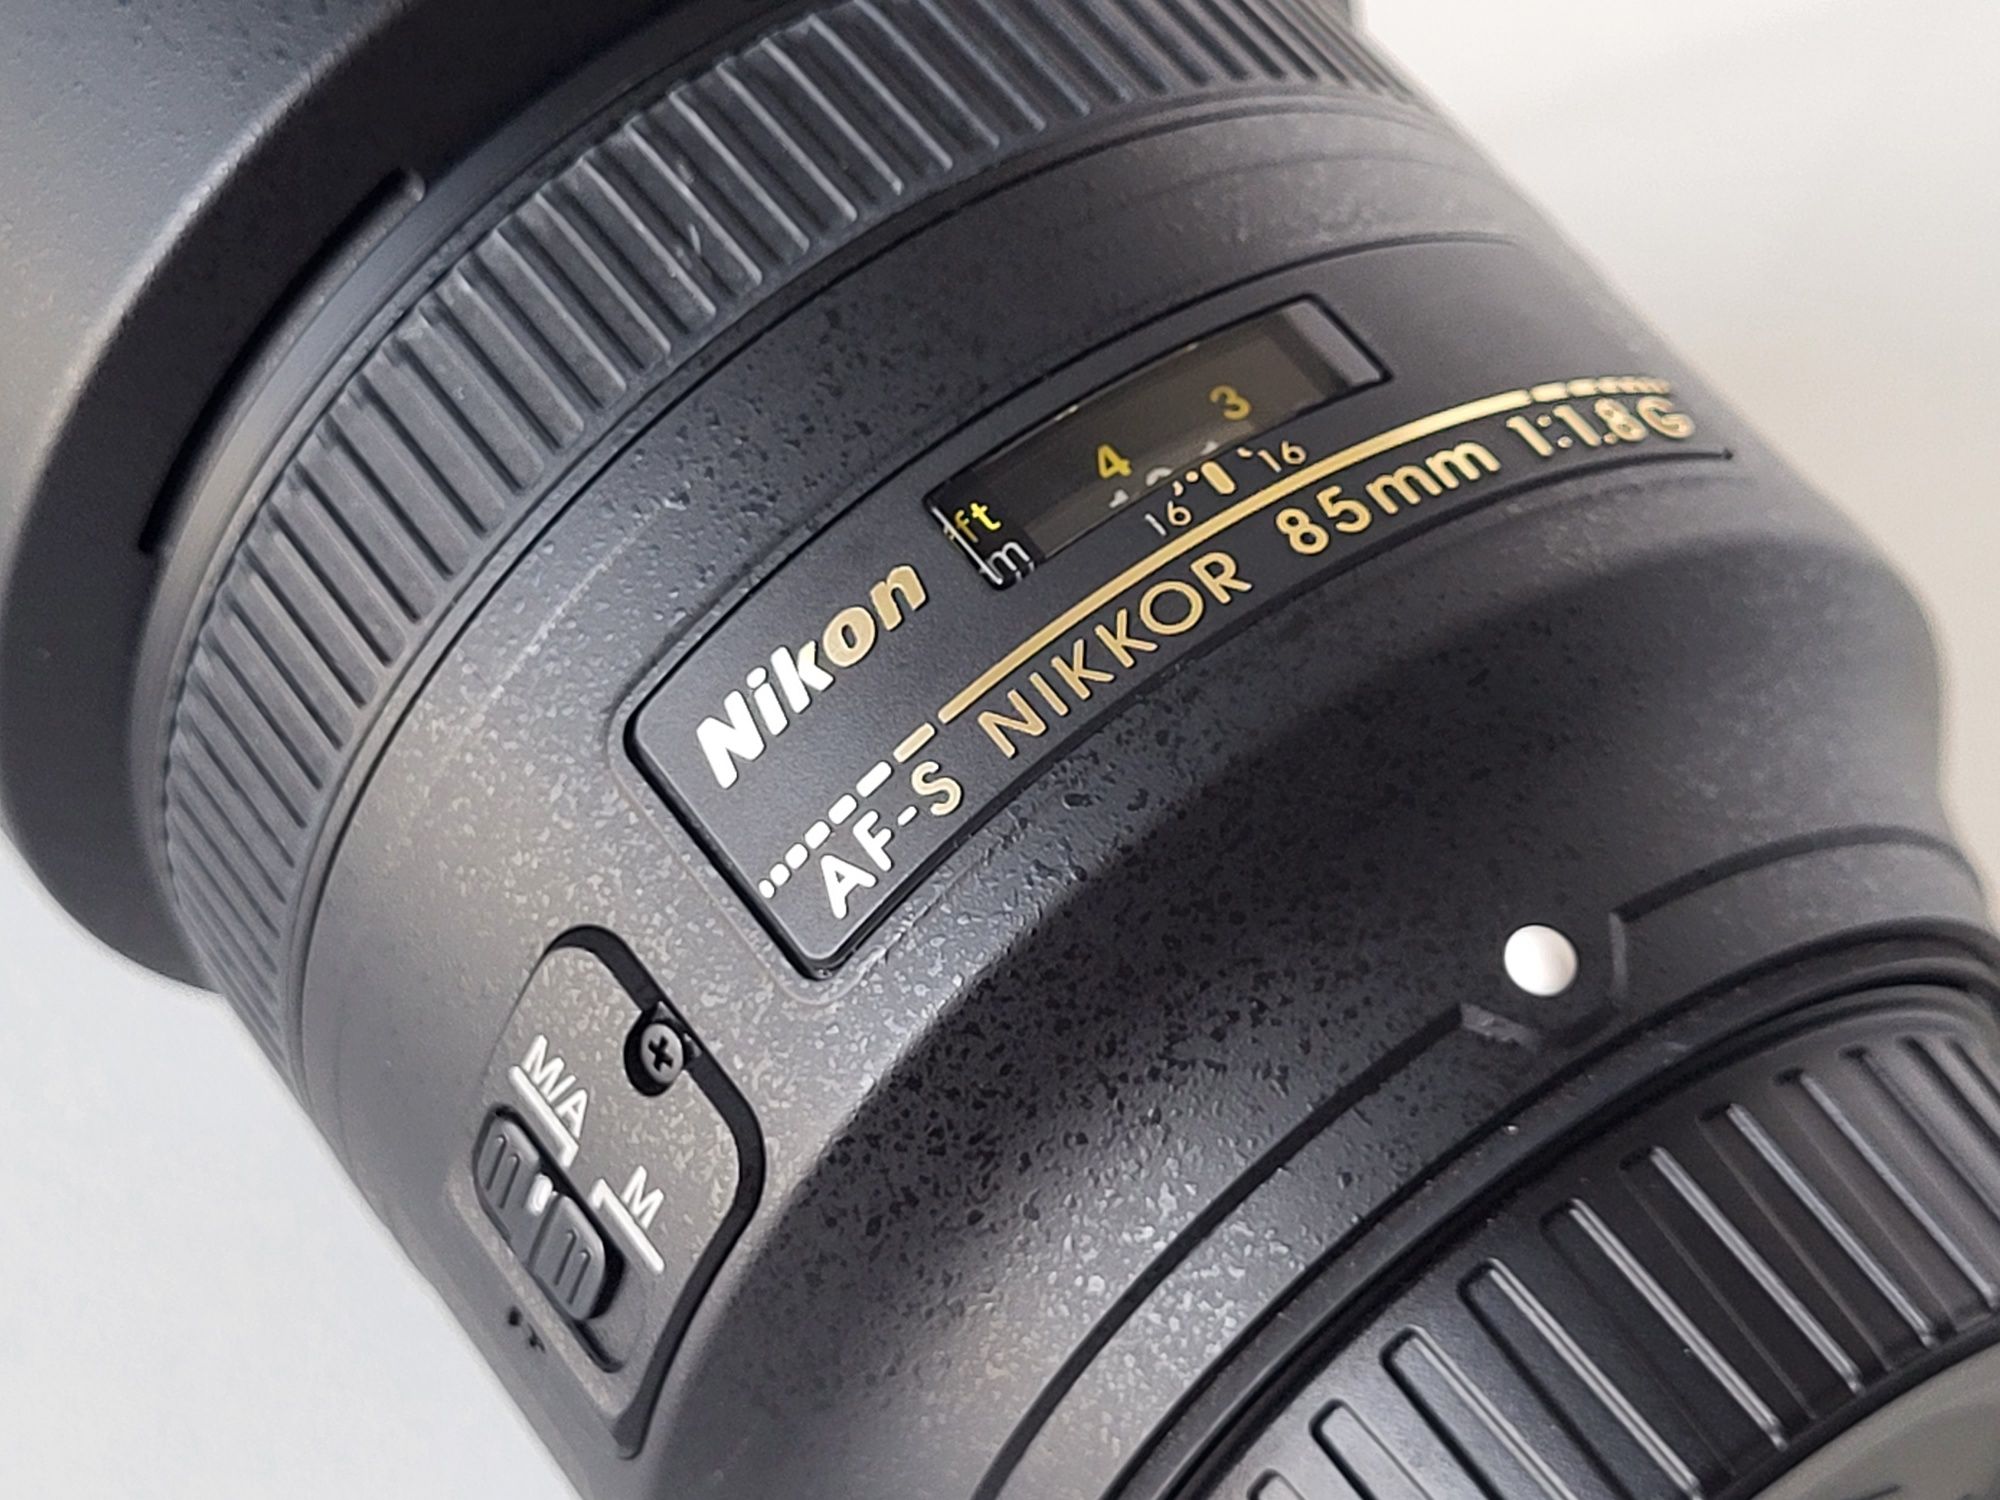 Obiectiv Nikkor (Nikon) 85 mm f1.8 G